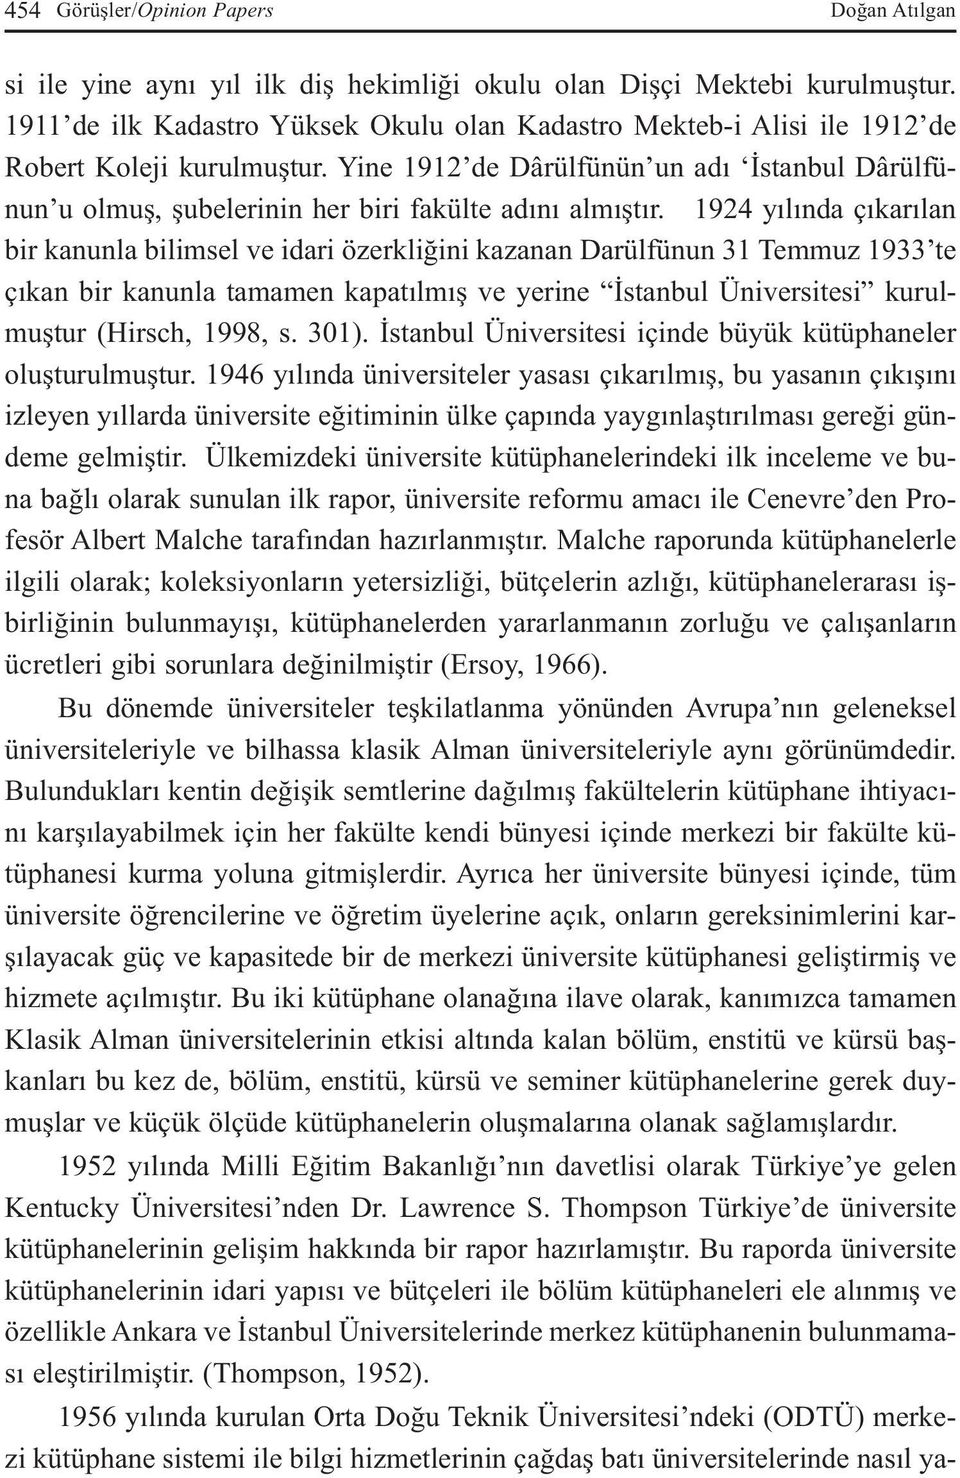 Yine 1912 de Dârülfünün un adı İstanbul Dârülfünun u olmuş, şubelerinin her biri fakülte adını almıştır.